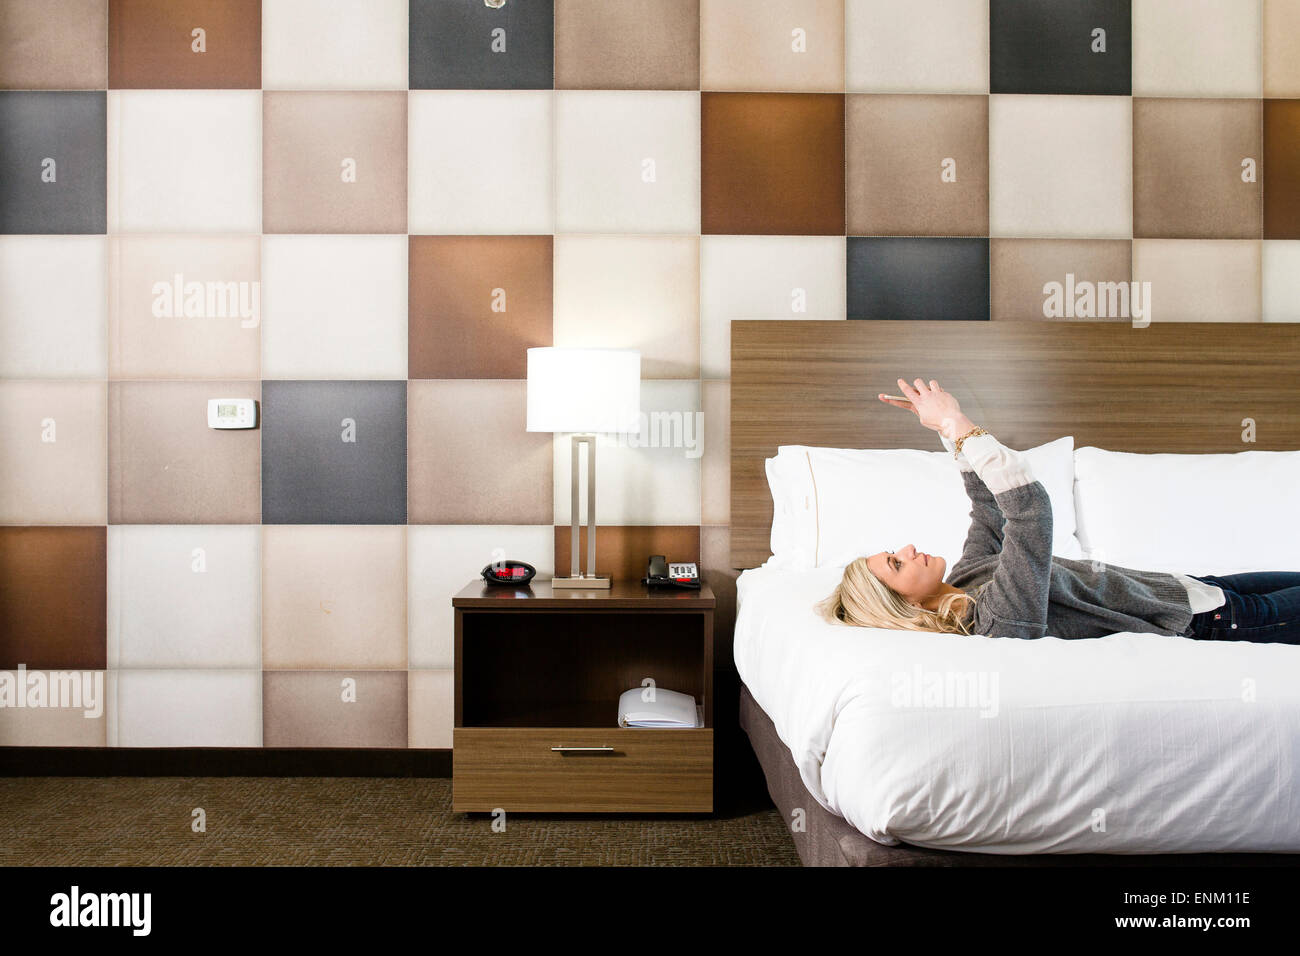 Eine schöne Dame nimmt Selfie, wie sie auf ein Motel Zimmer Bett liegt. Stockfoto